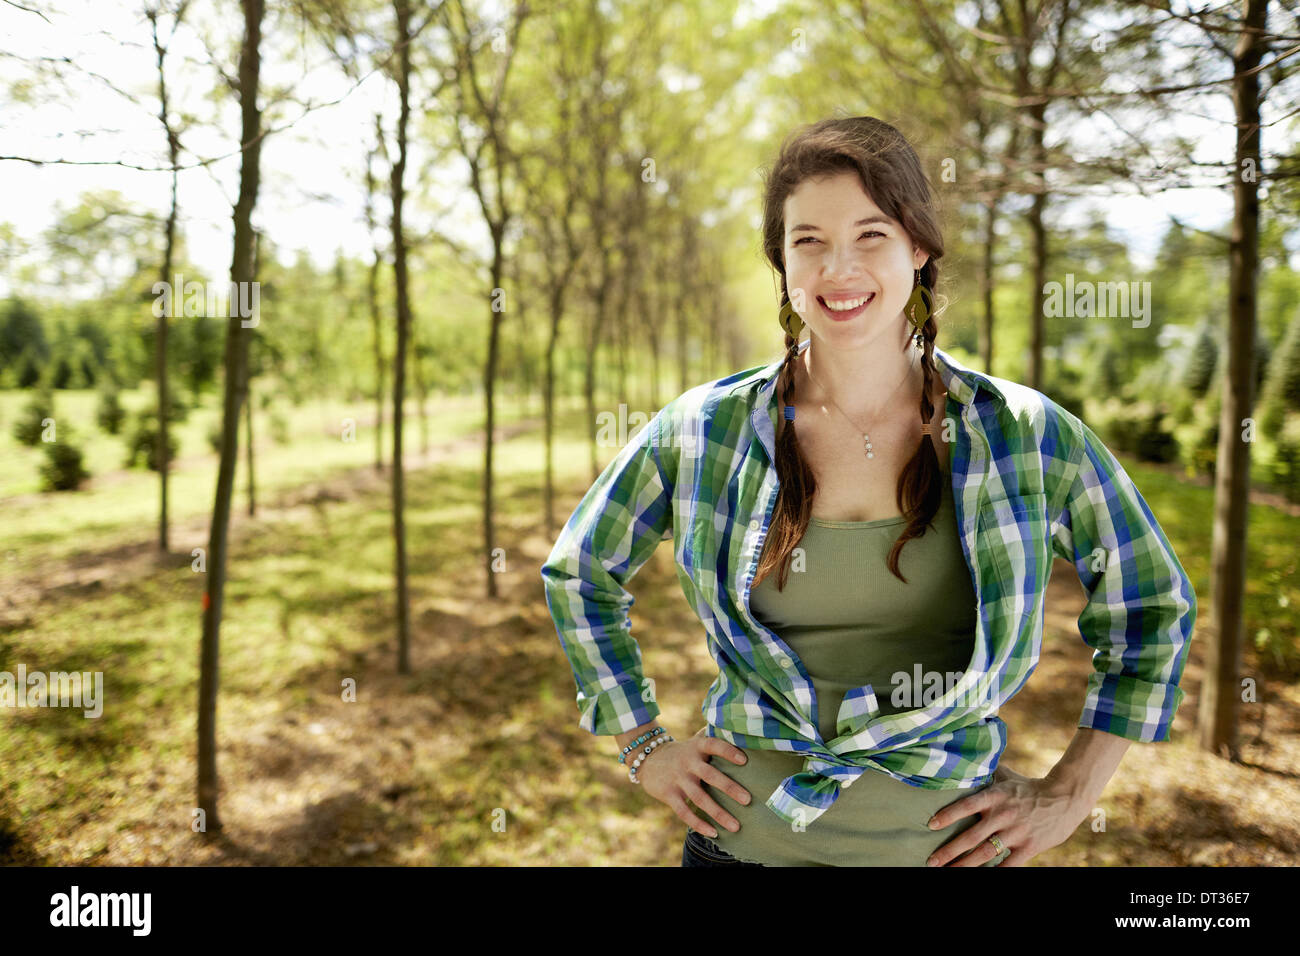 Ein Mädchen in ein grün kariertes Hemd mit Zöpfen Stockfoto